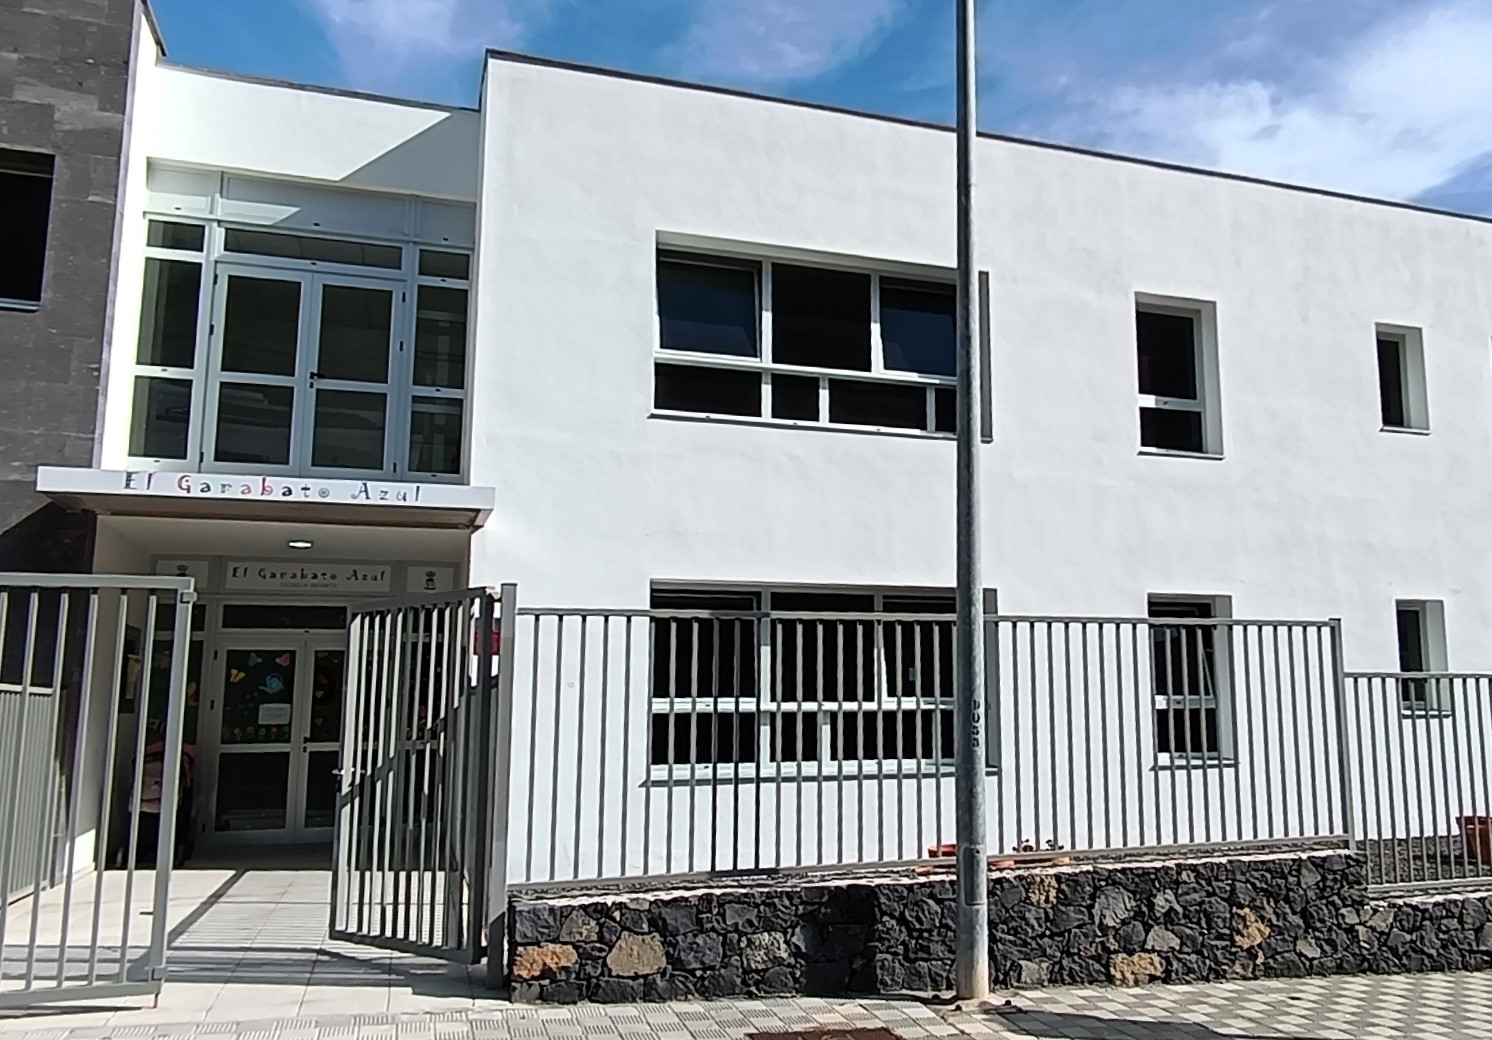 El Ayuntamiento de La Frontera cede al Gobierno de Canarias la Escuela Infantil El Garabato Azul